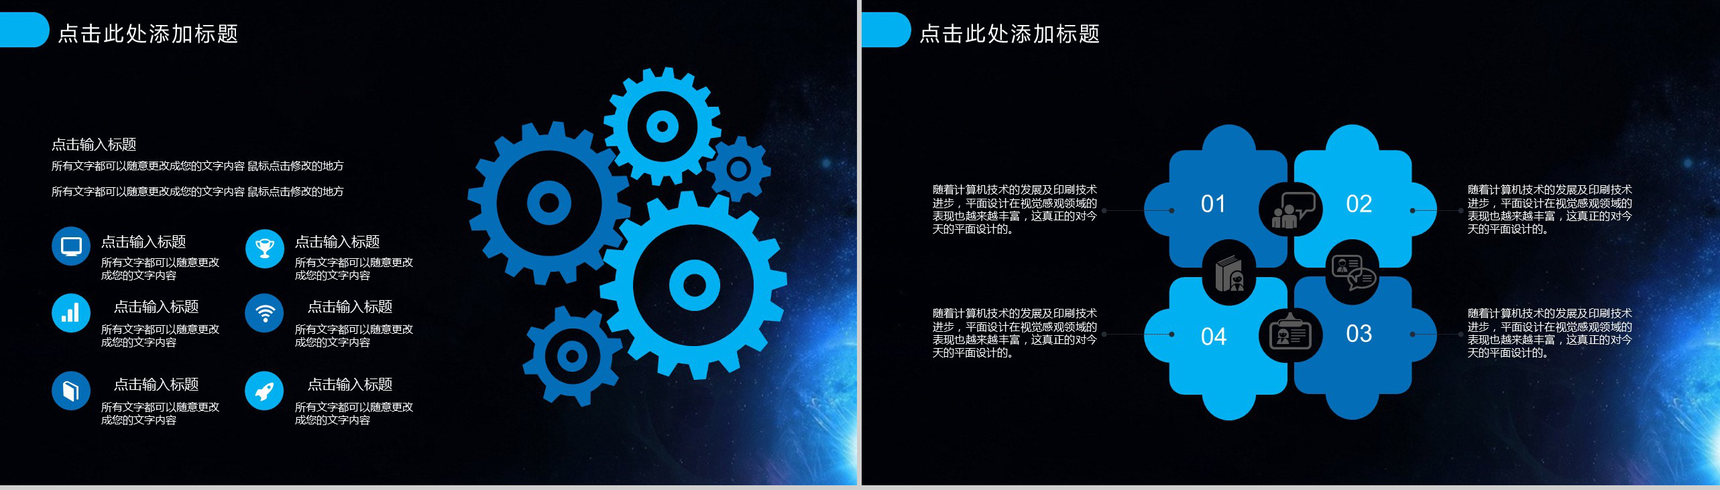 蓝色星空背景网络科技产品宣传工作总结PPT模板-4